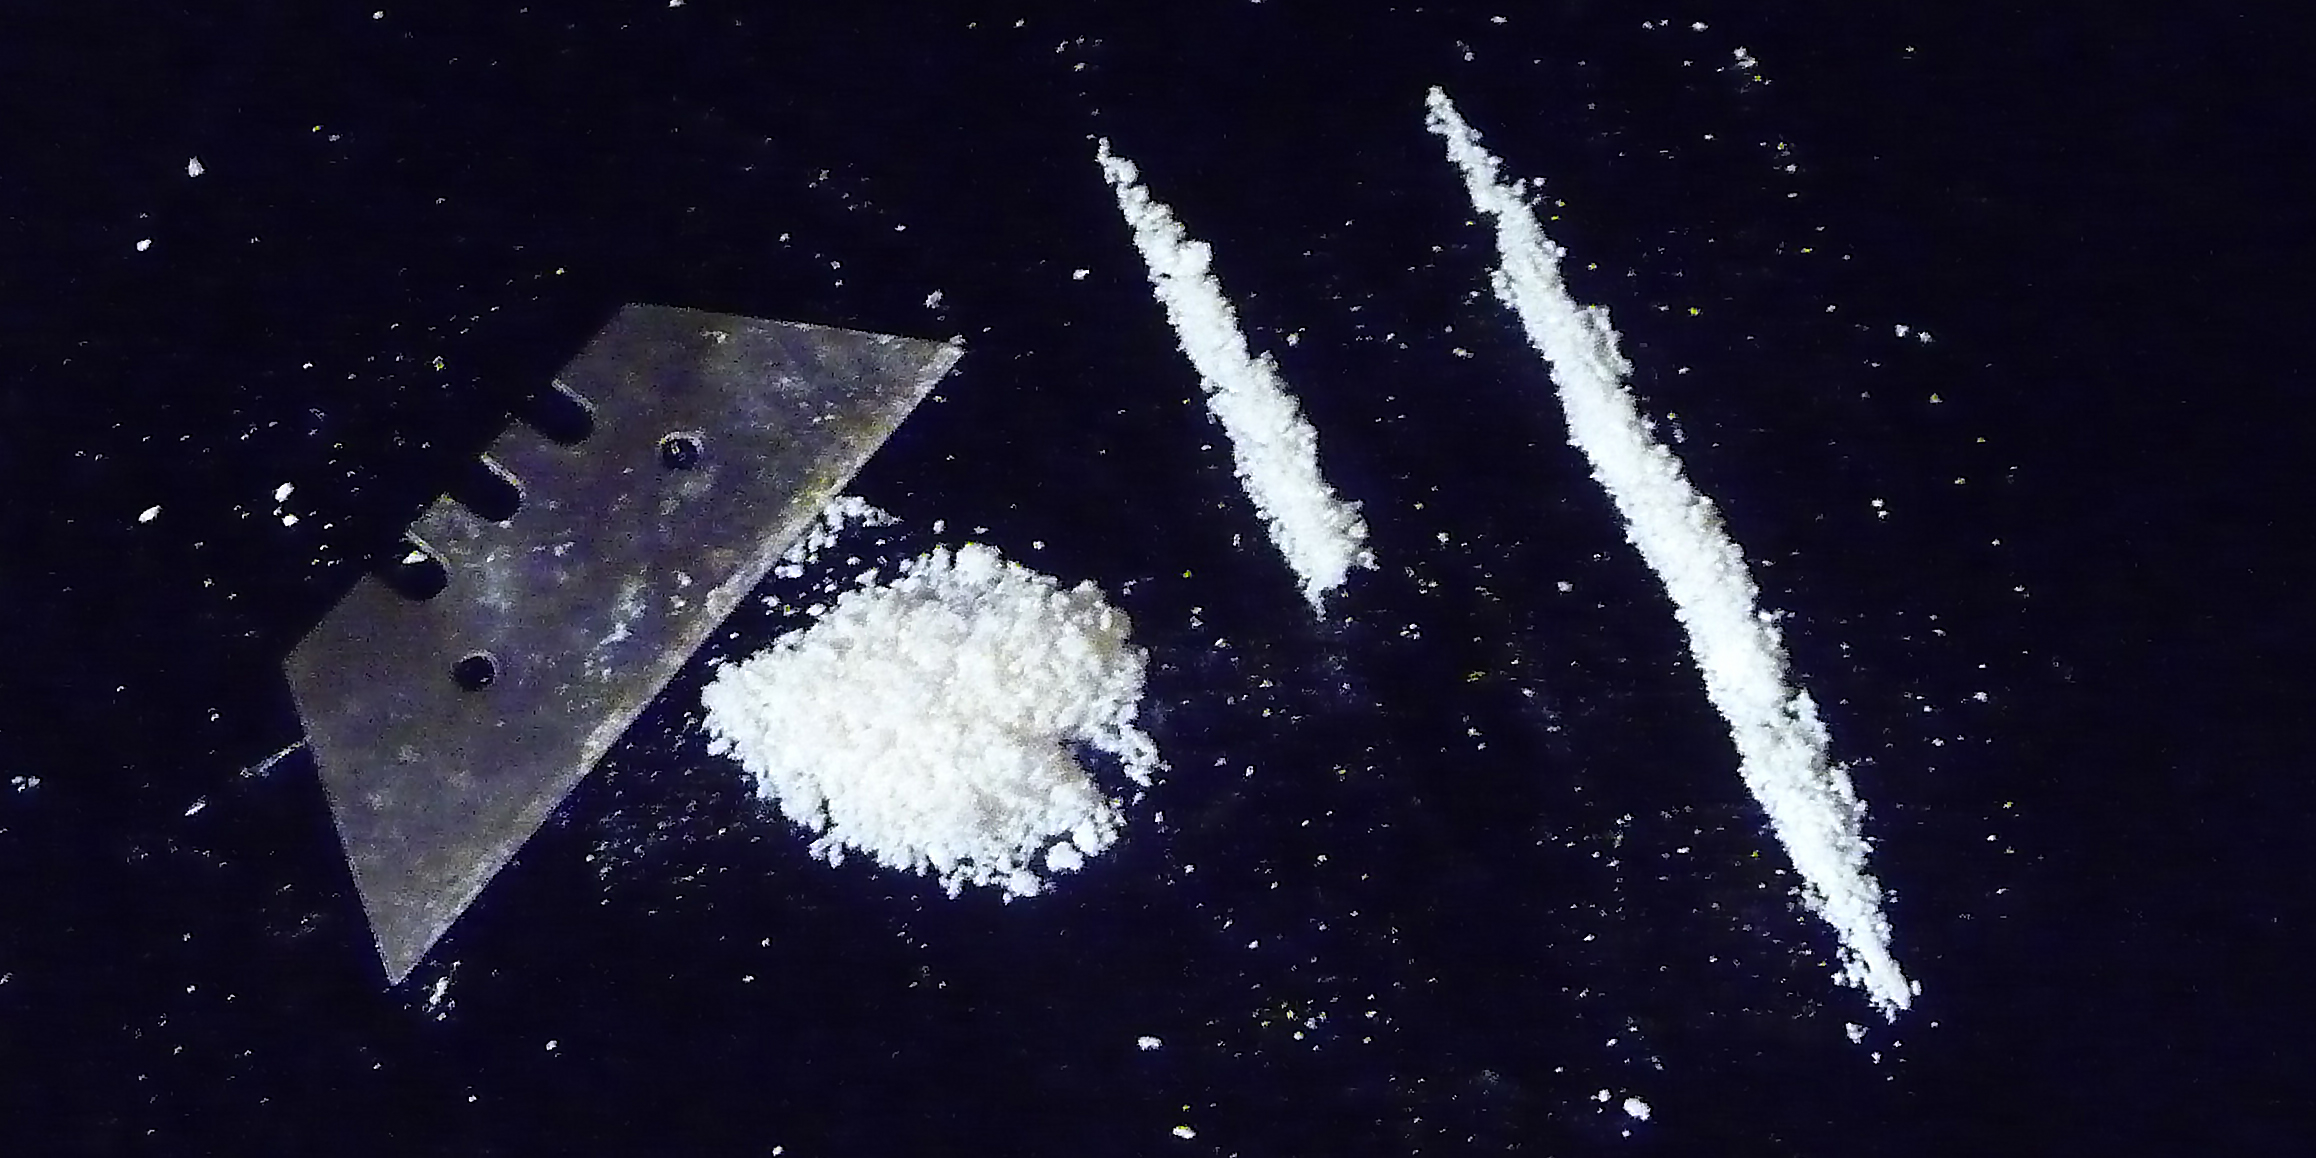 Amphetamin für den Konsum vorbereitet